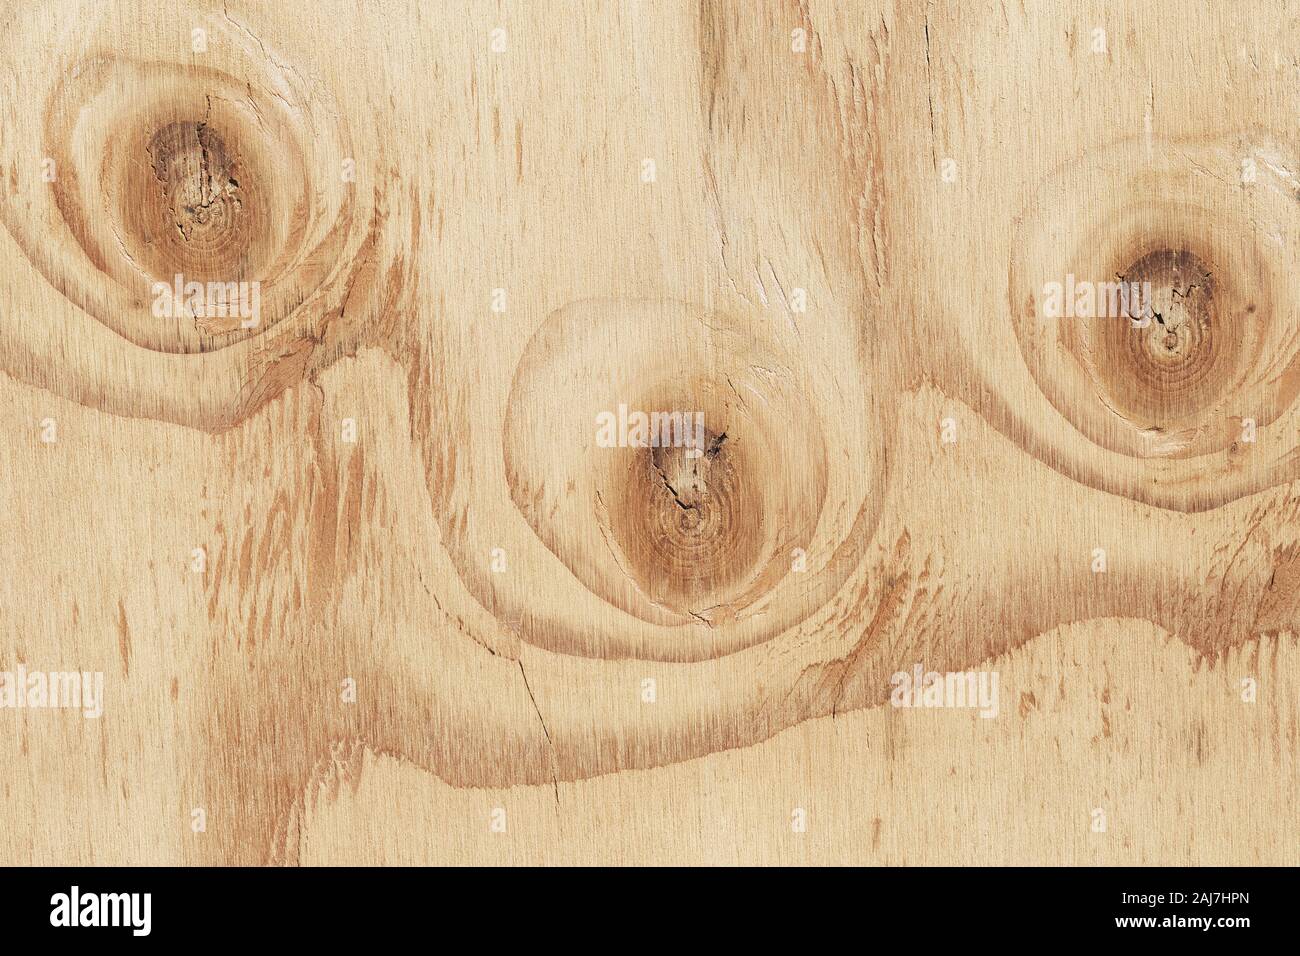 Les vieux meubles en bois avec en arrière-plan. noueux Texture bois close up Banque D'Images